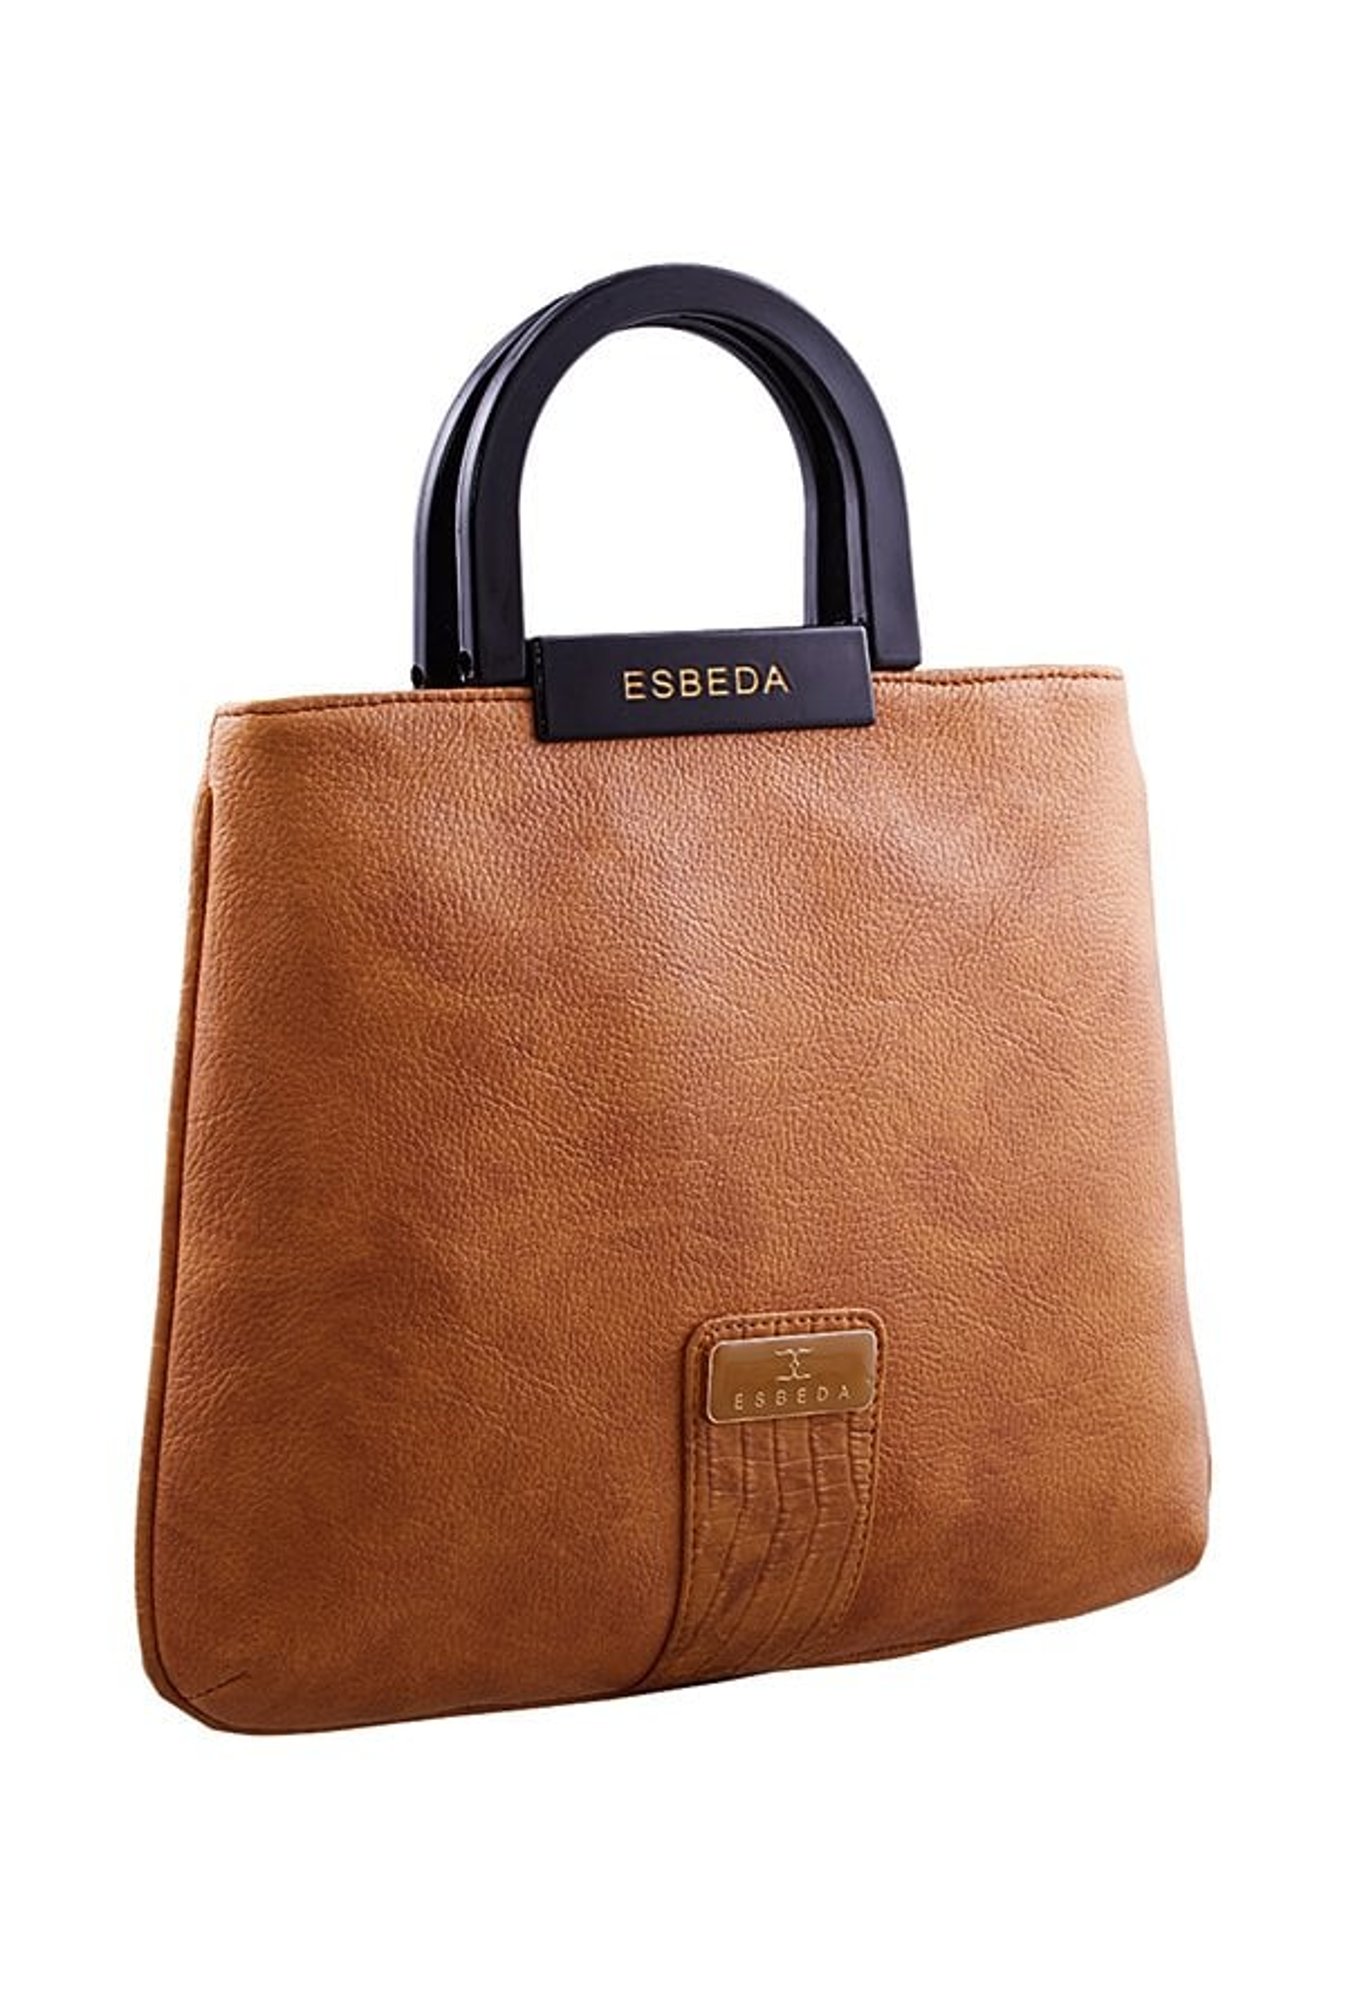 ESBEDA- Handbags to cherish – Namratasrealmblog